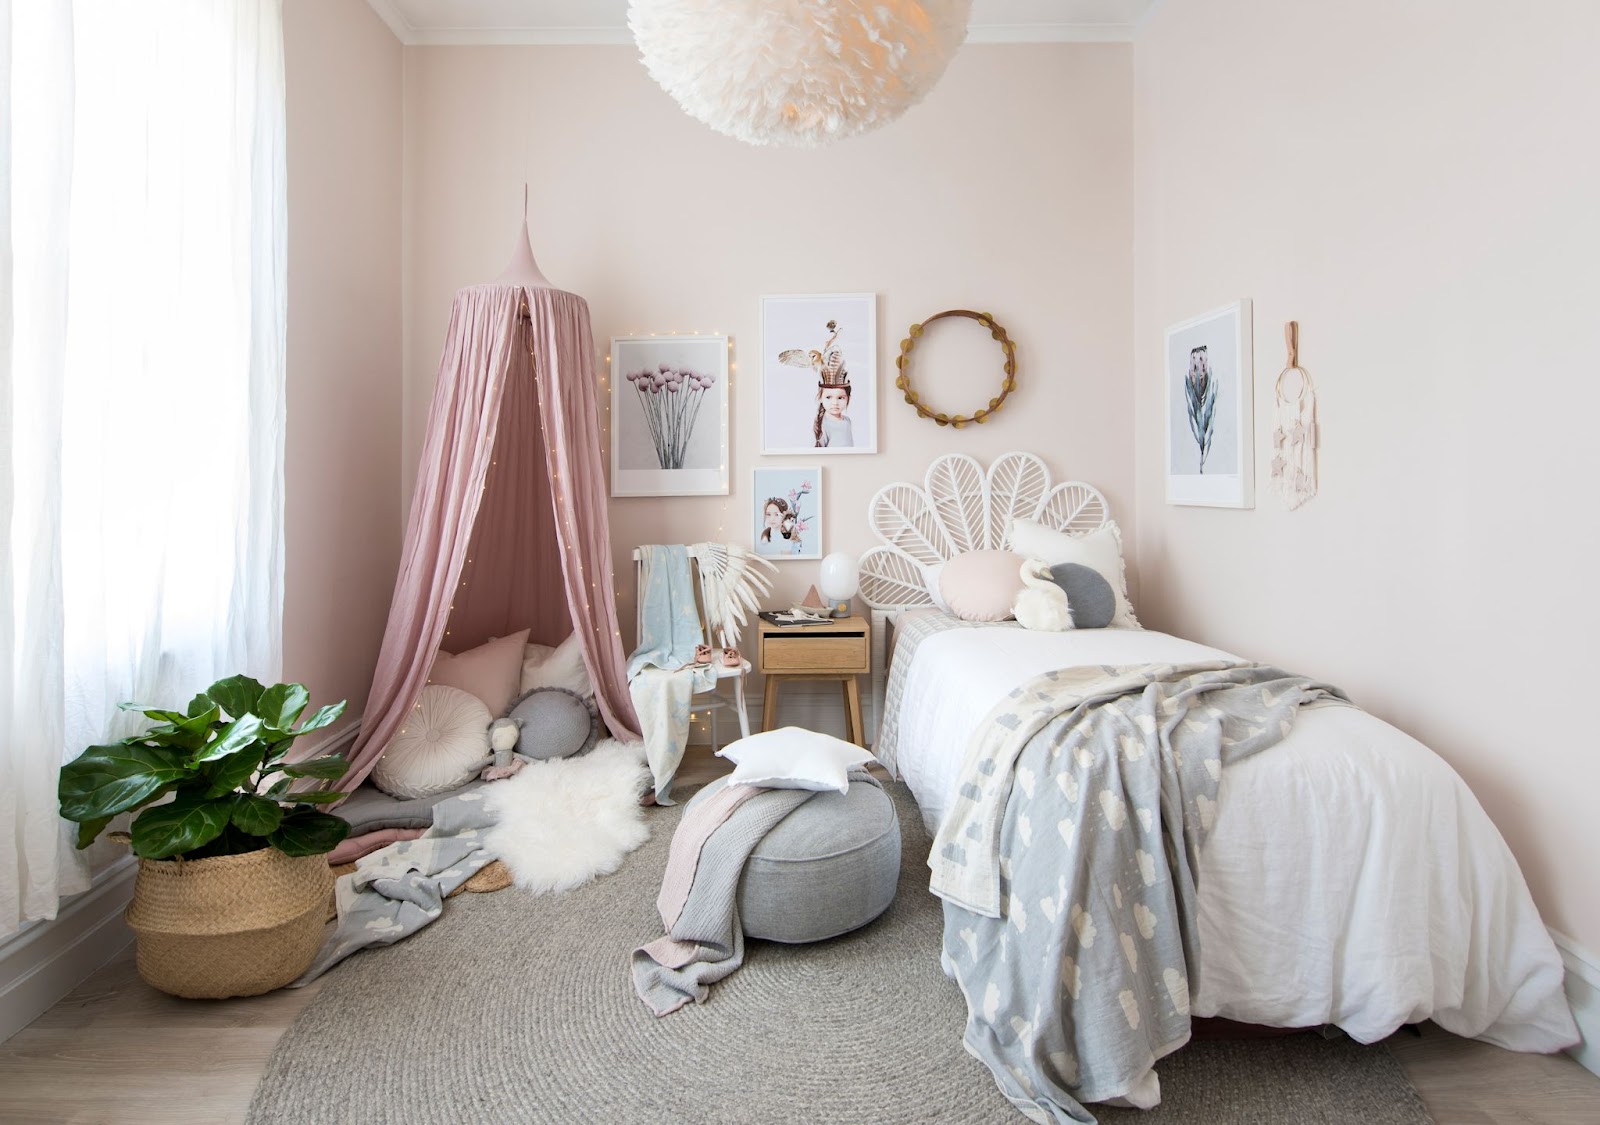 Desain kamar tidur anak perempuan dengan dominasi warna putih